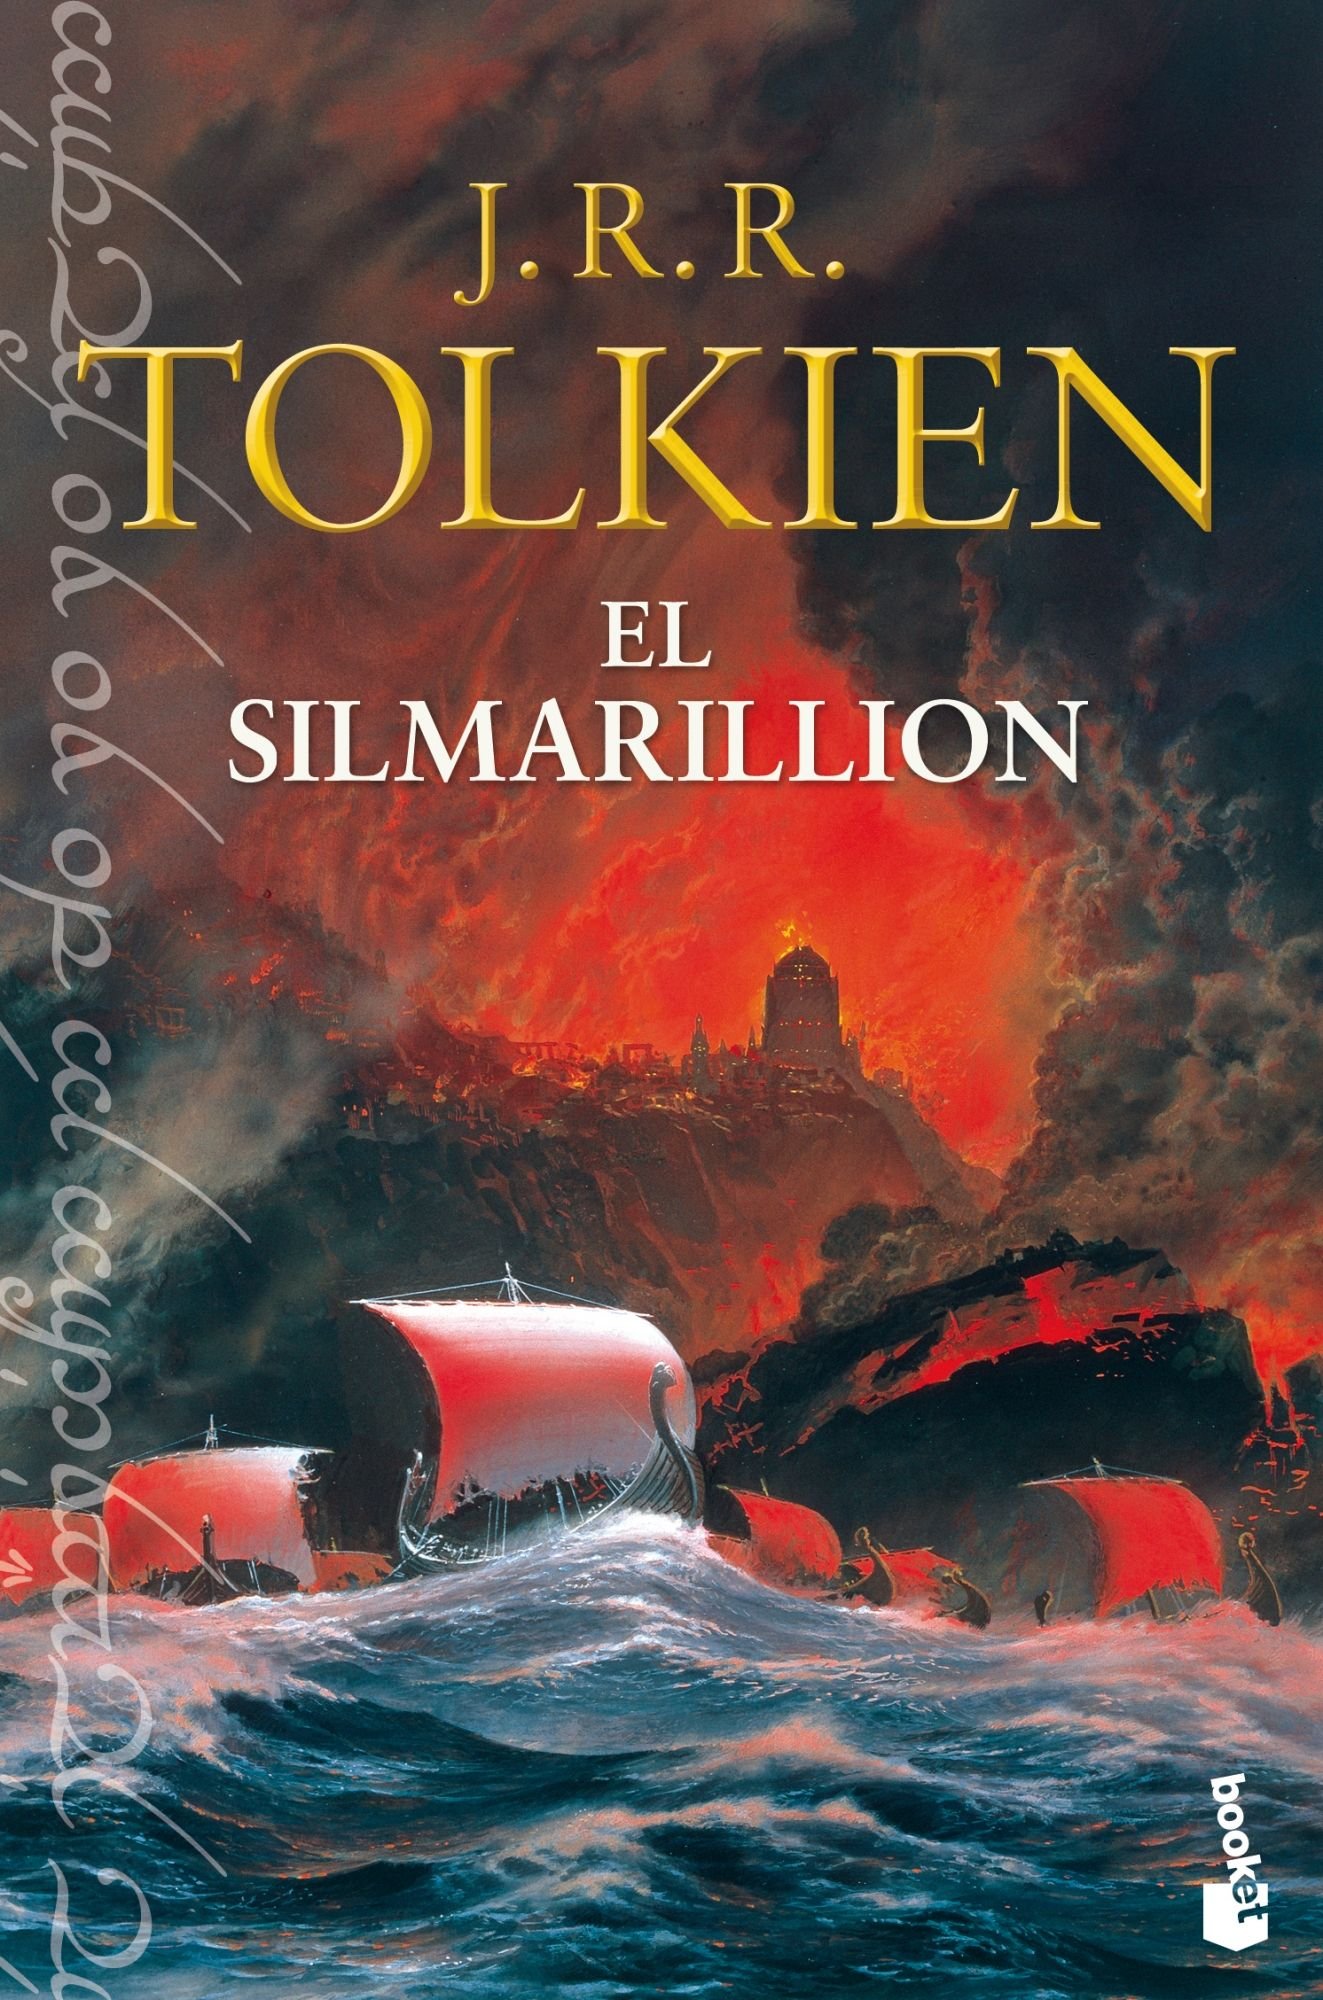 La historia del Silmarillion de J.R.R. Tolkien